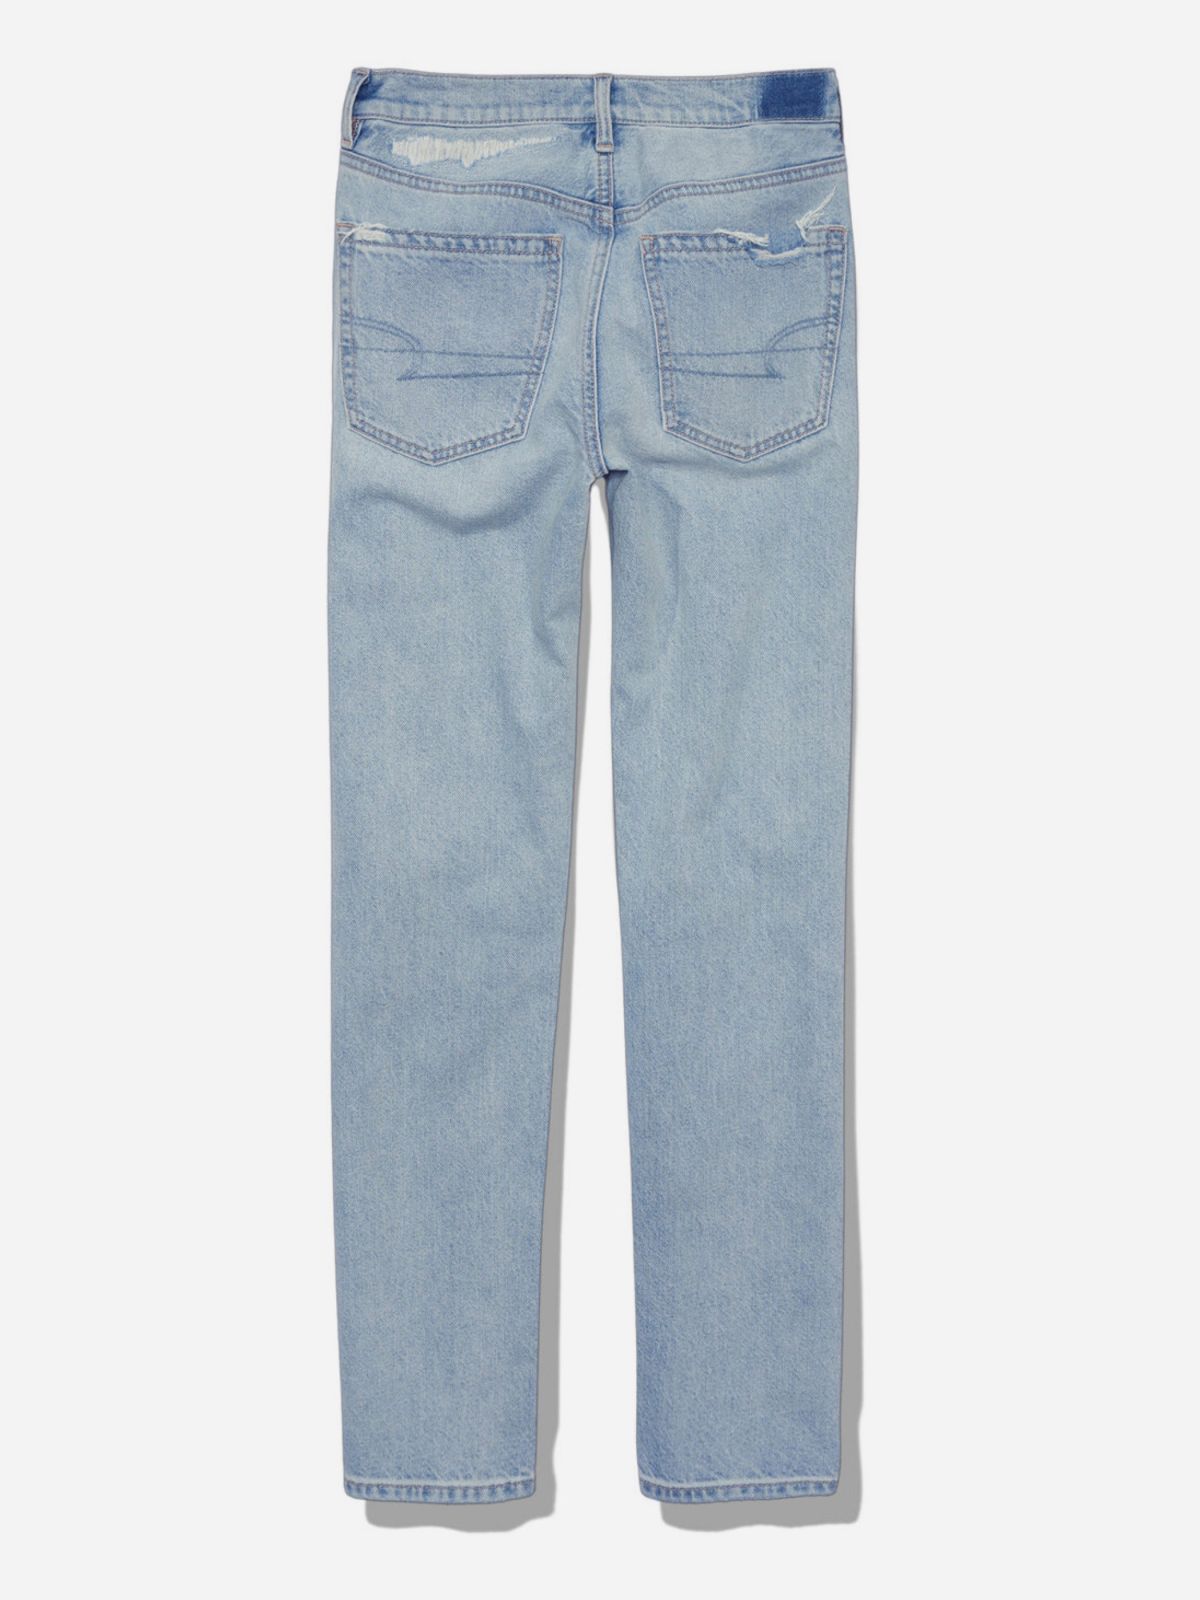  ג'ינס ארוך עם קרעים / נשים של AMERICAN EAGLE